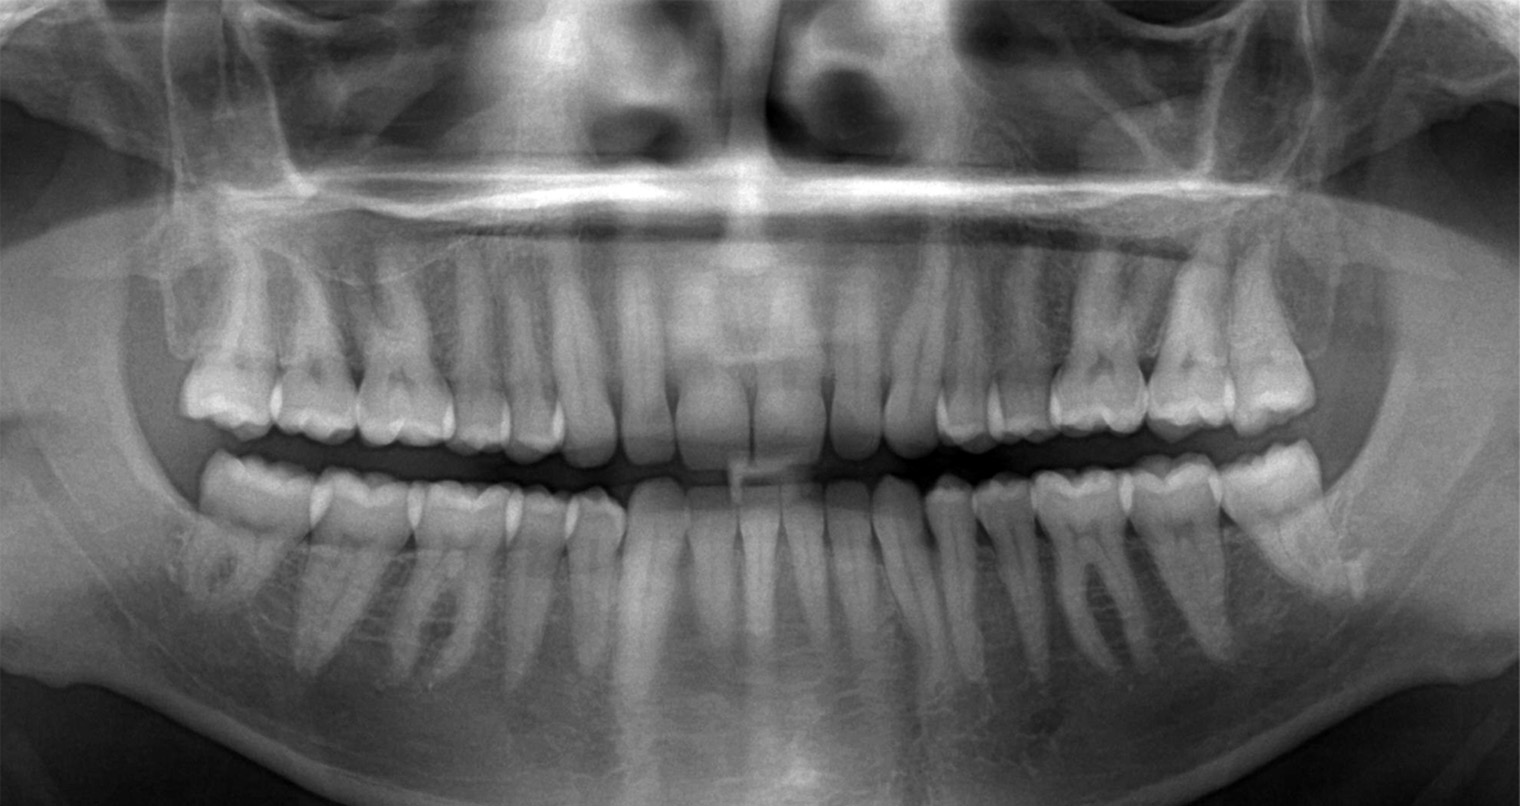 Панорамный снимок зубов выглядит так. Источник: nava-mos.ru